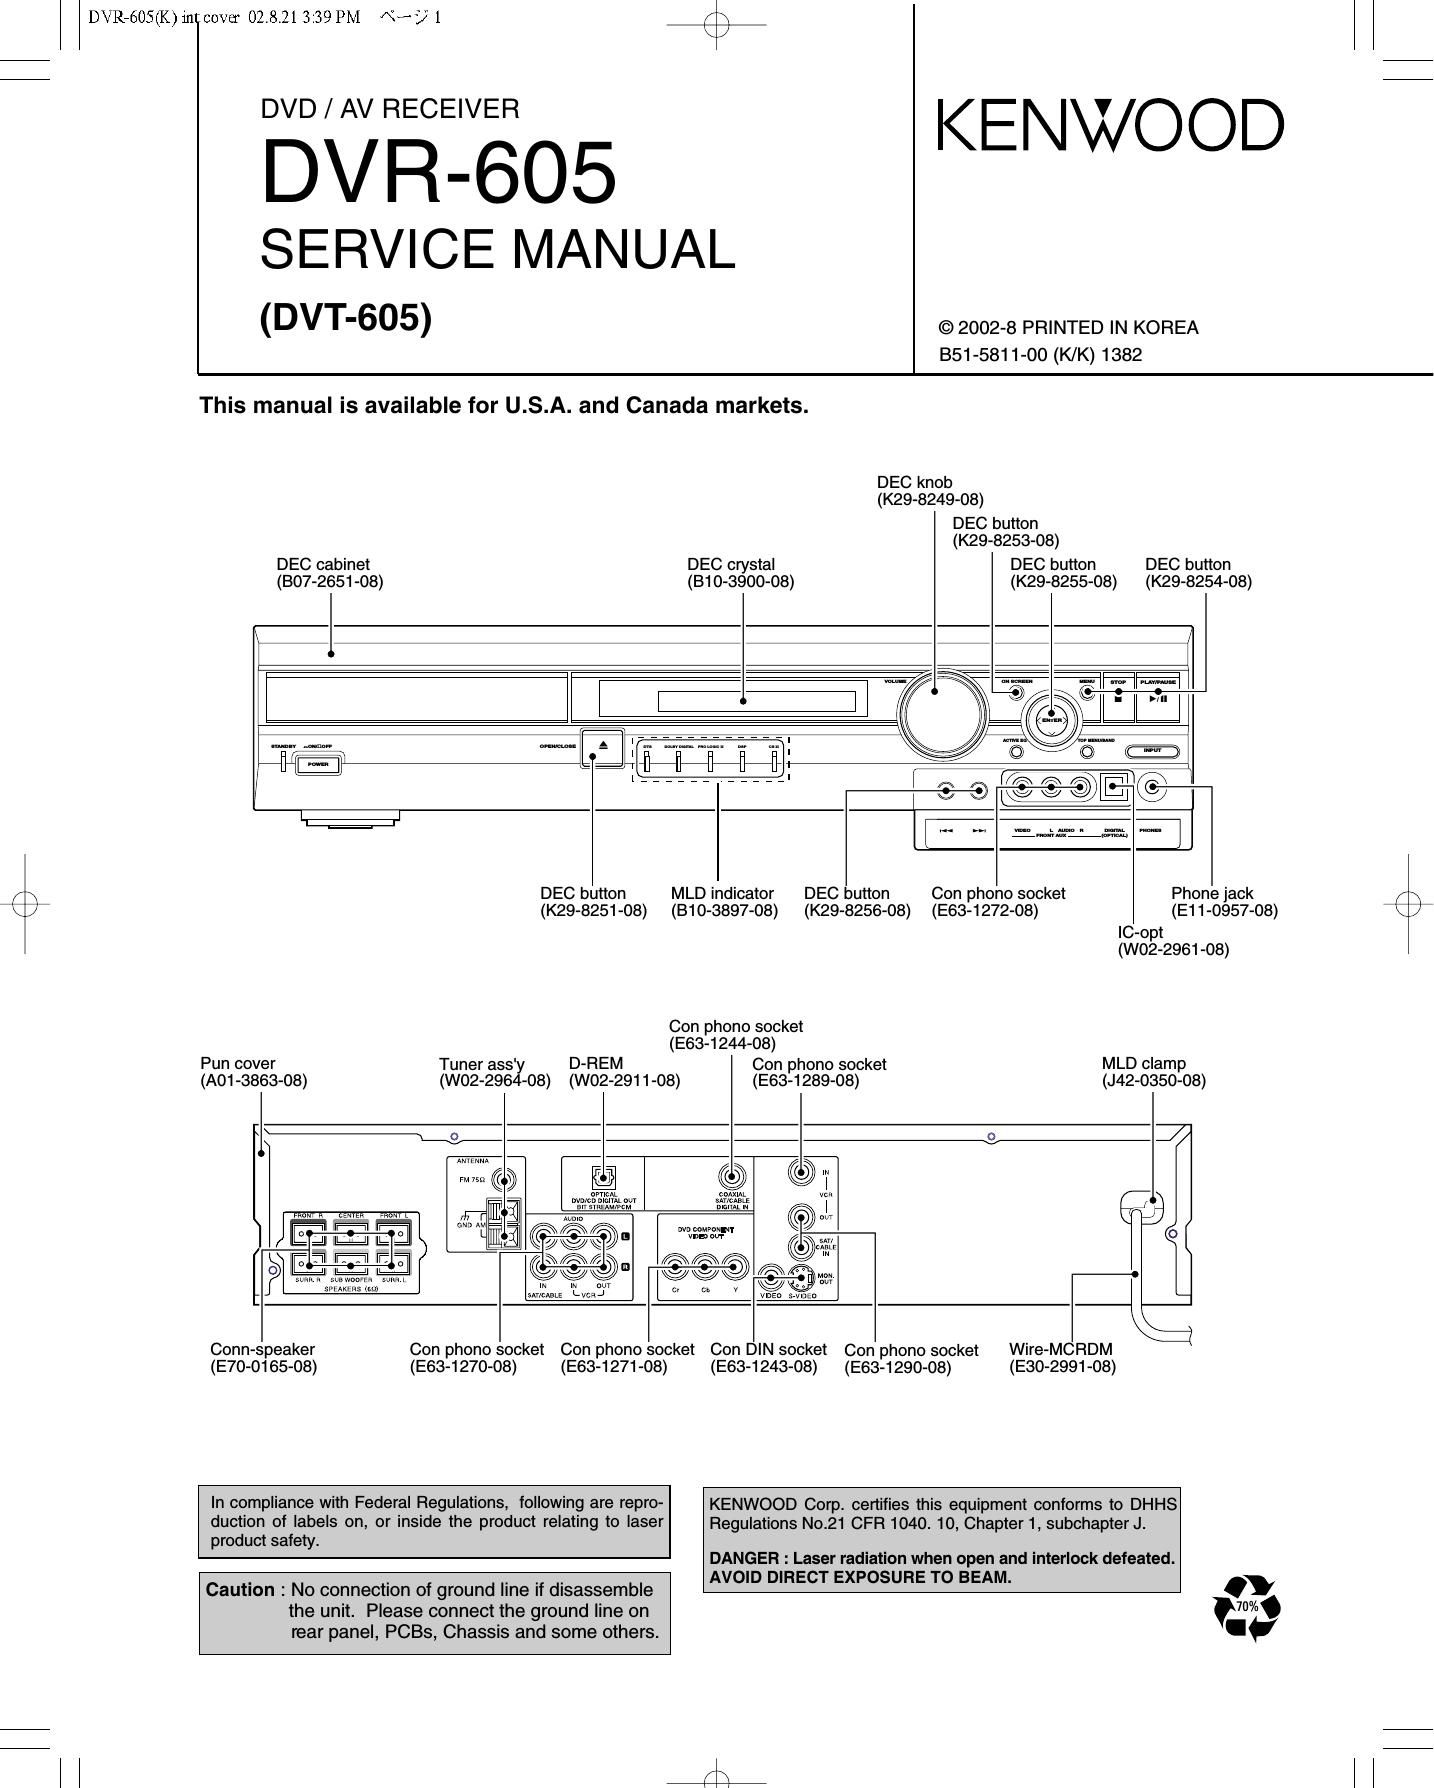 Kenwood DVR 605 Service Manual